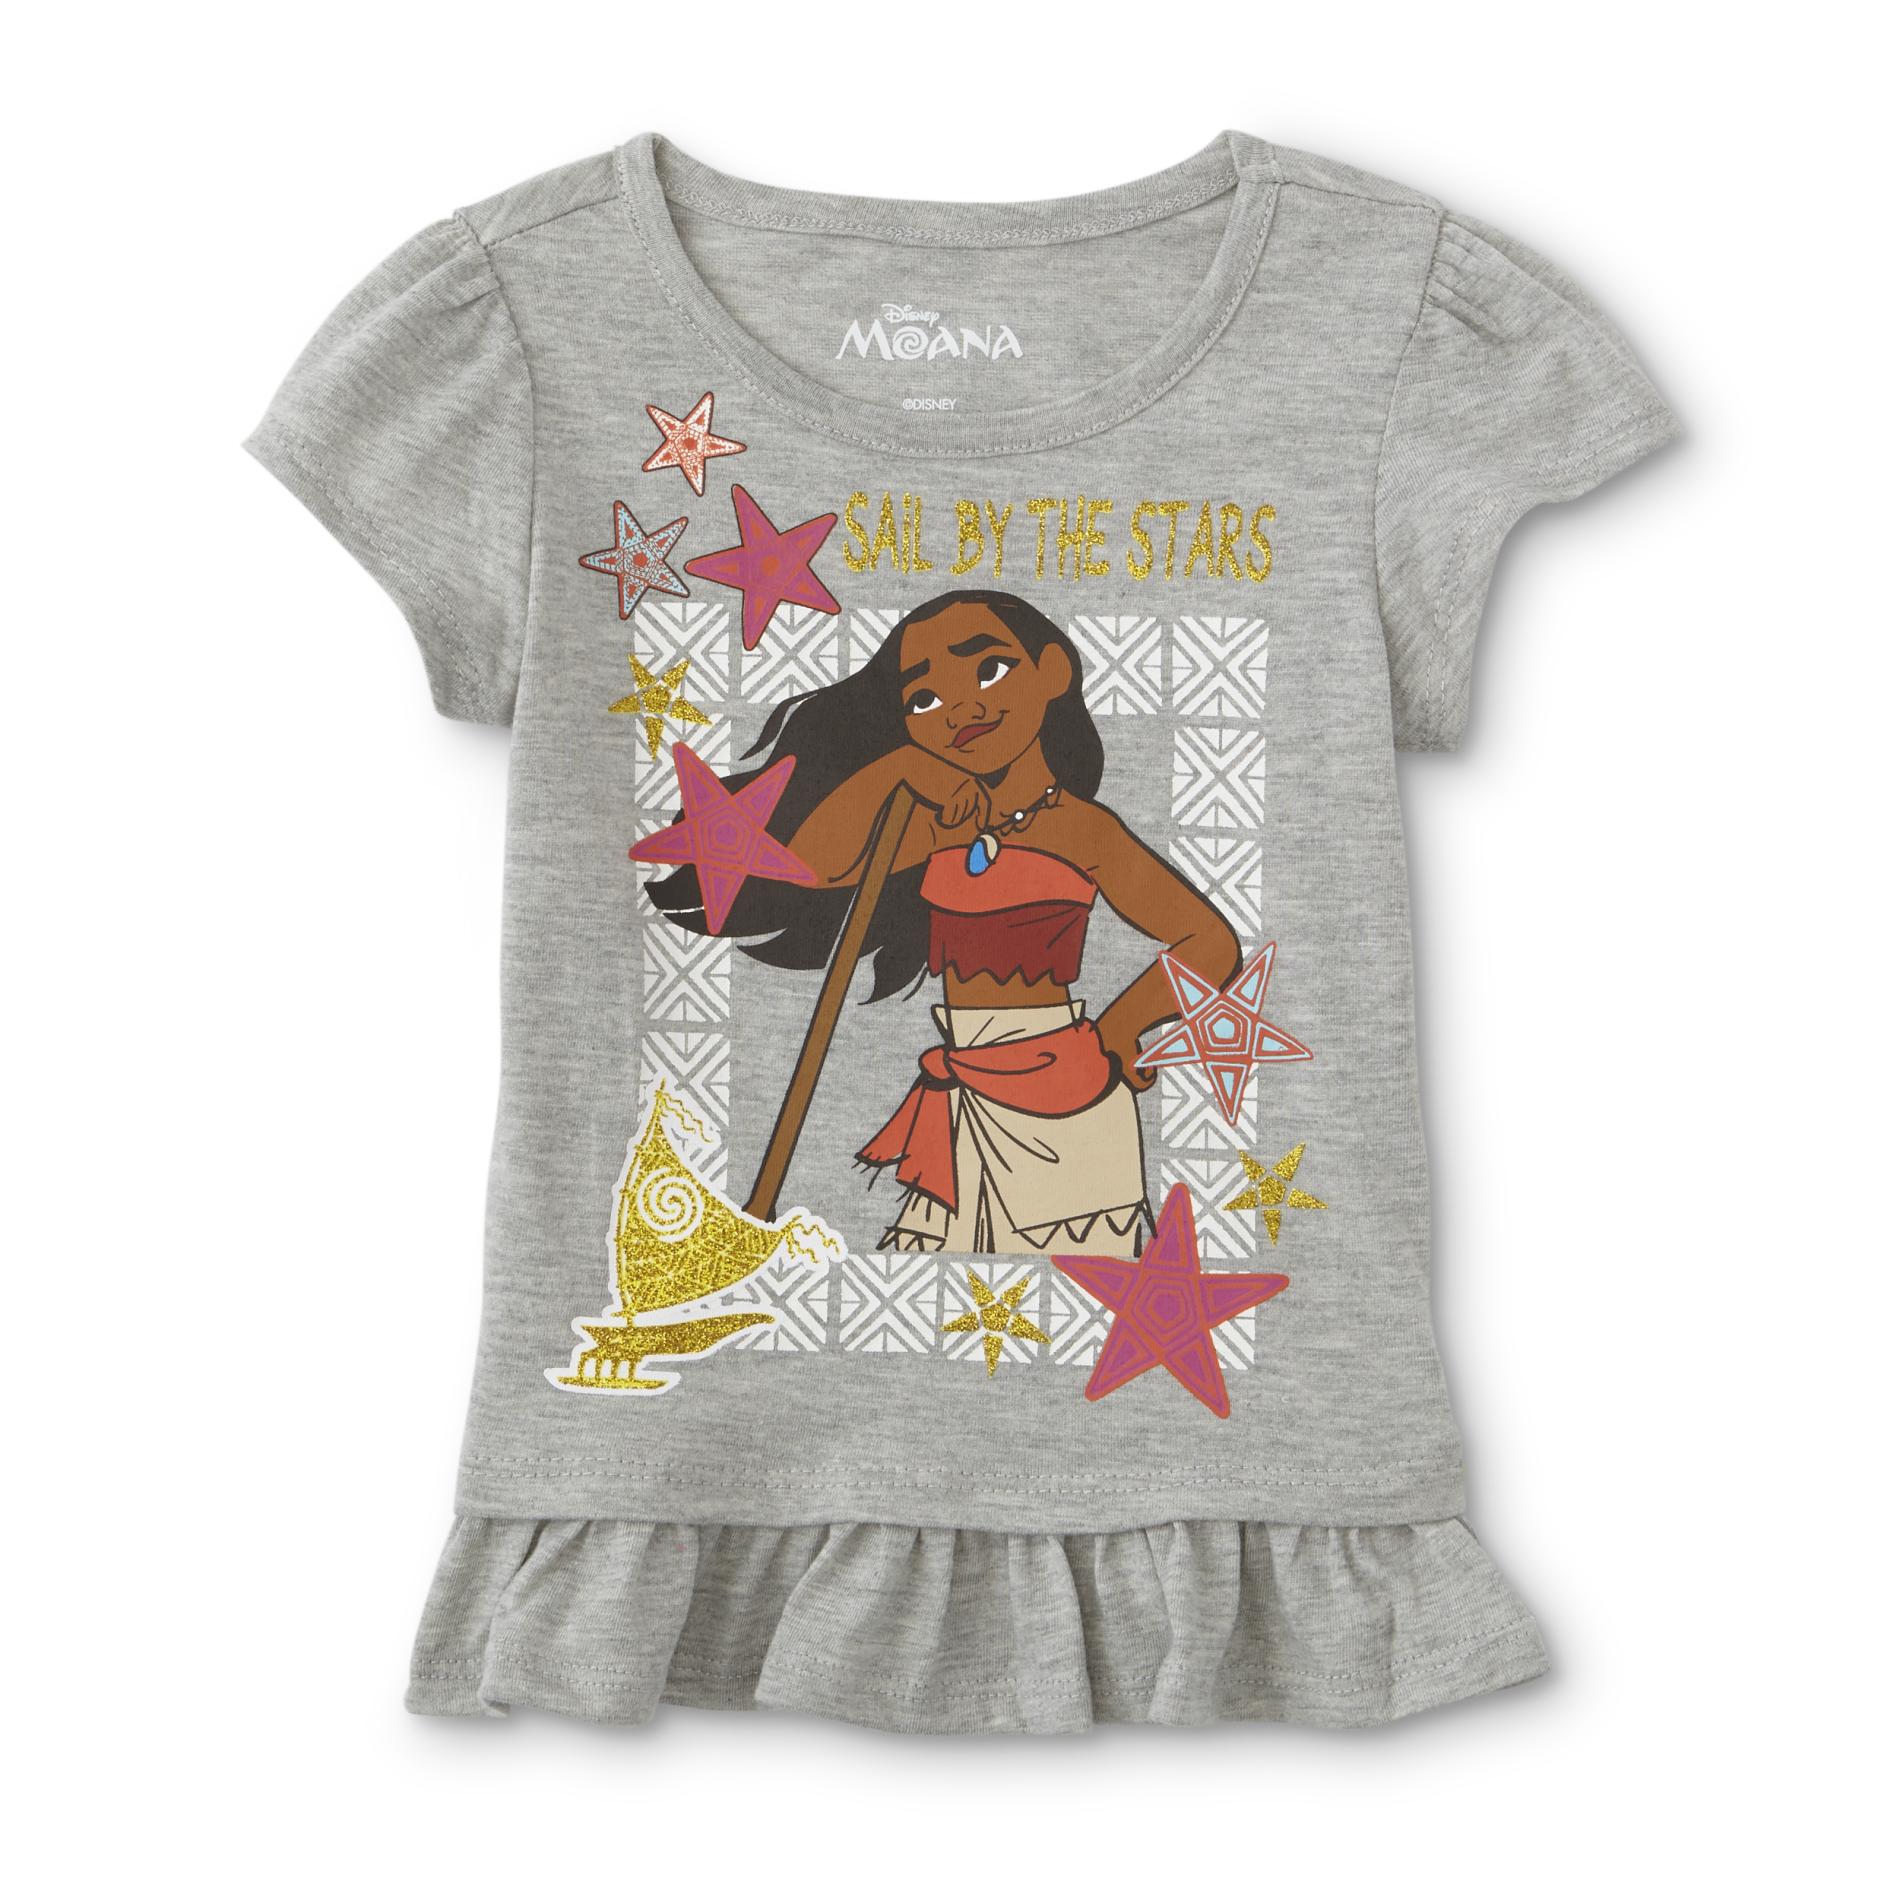 Disney Toddler Girls' Ruffle T-Shirt - Moana